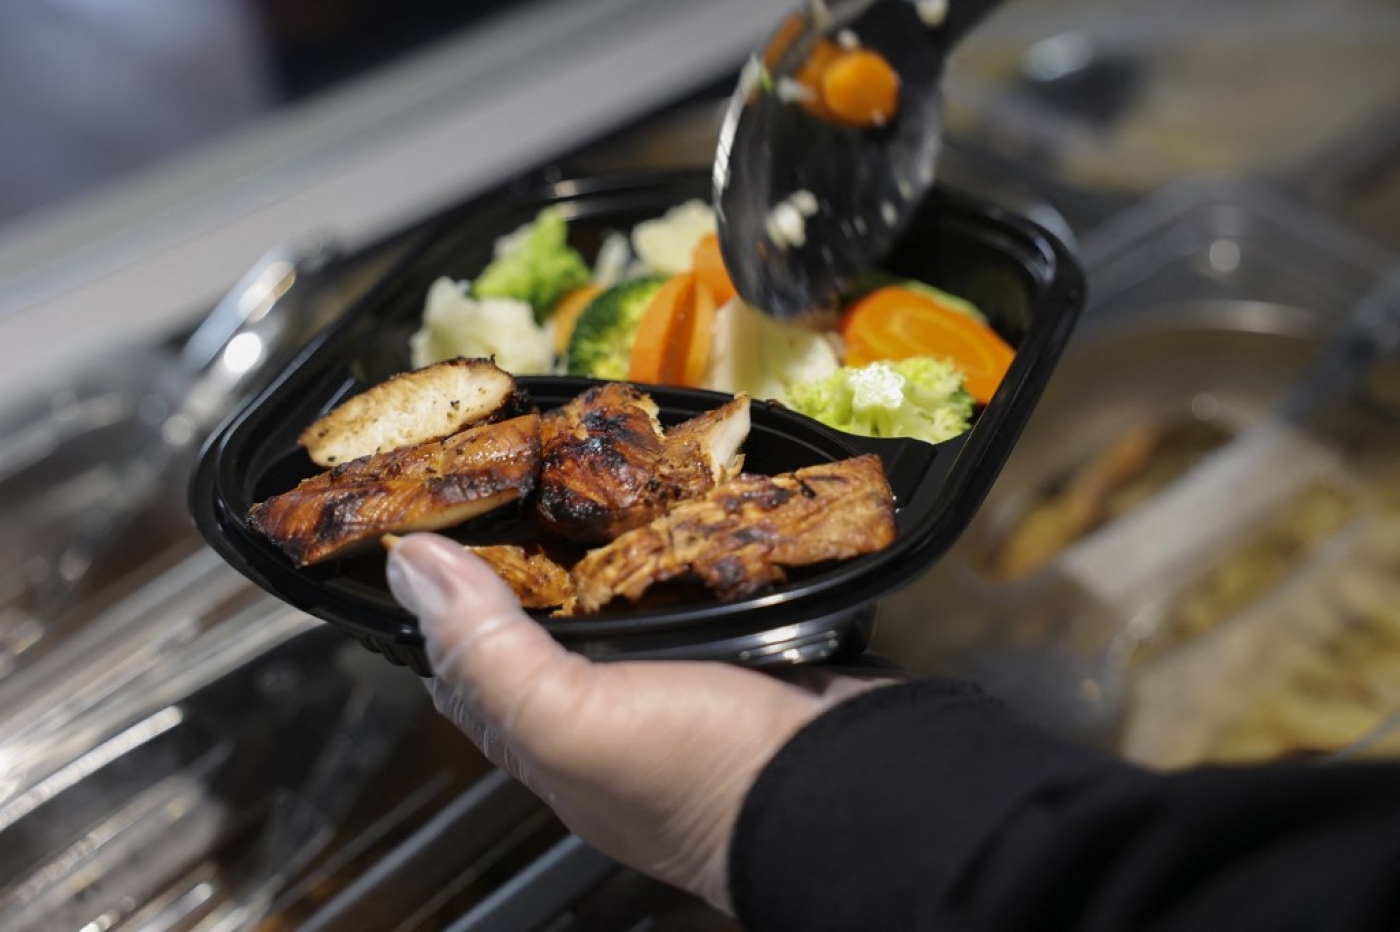 De nouvelles enseignes de restauration proposent des plats plus diététiques dans un pays menacé par la hausse des cas d’obésité (AFP/Fayez Nureldine)